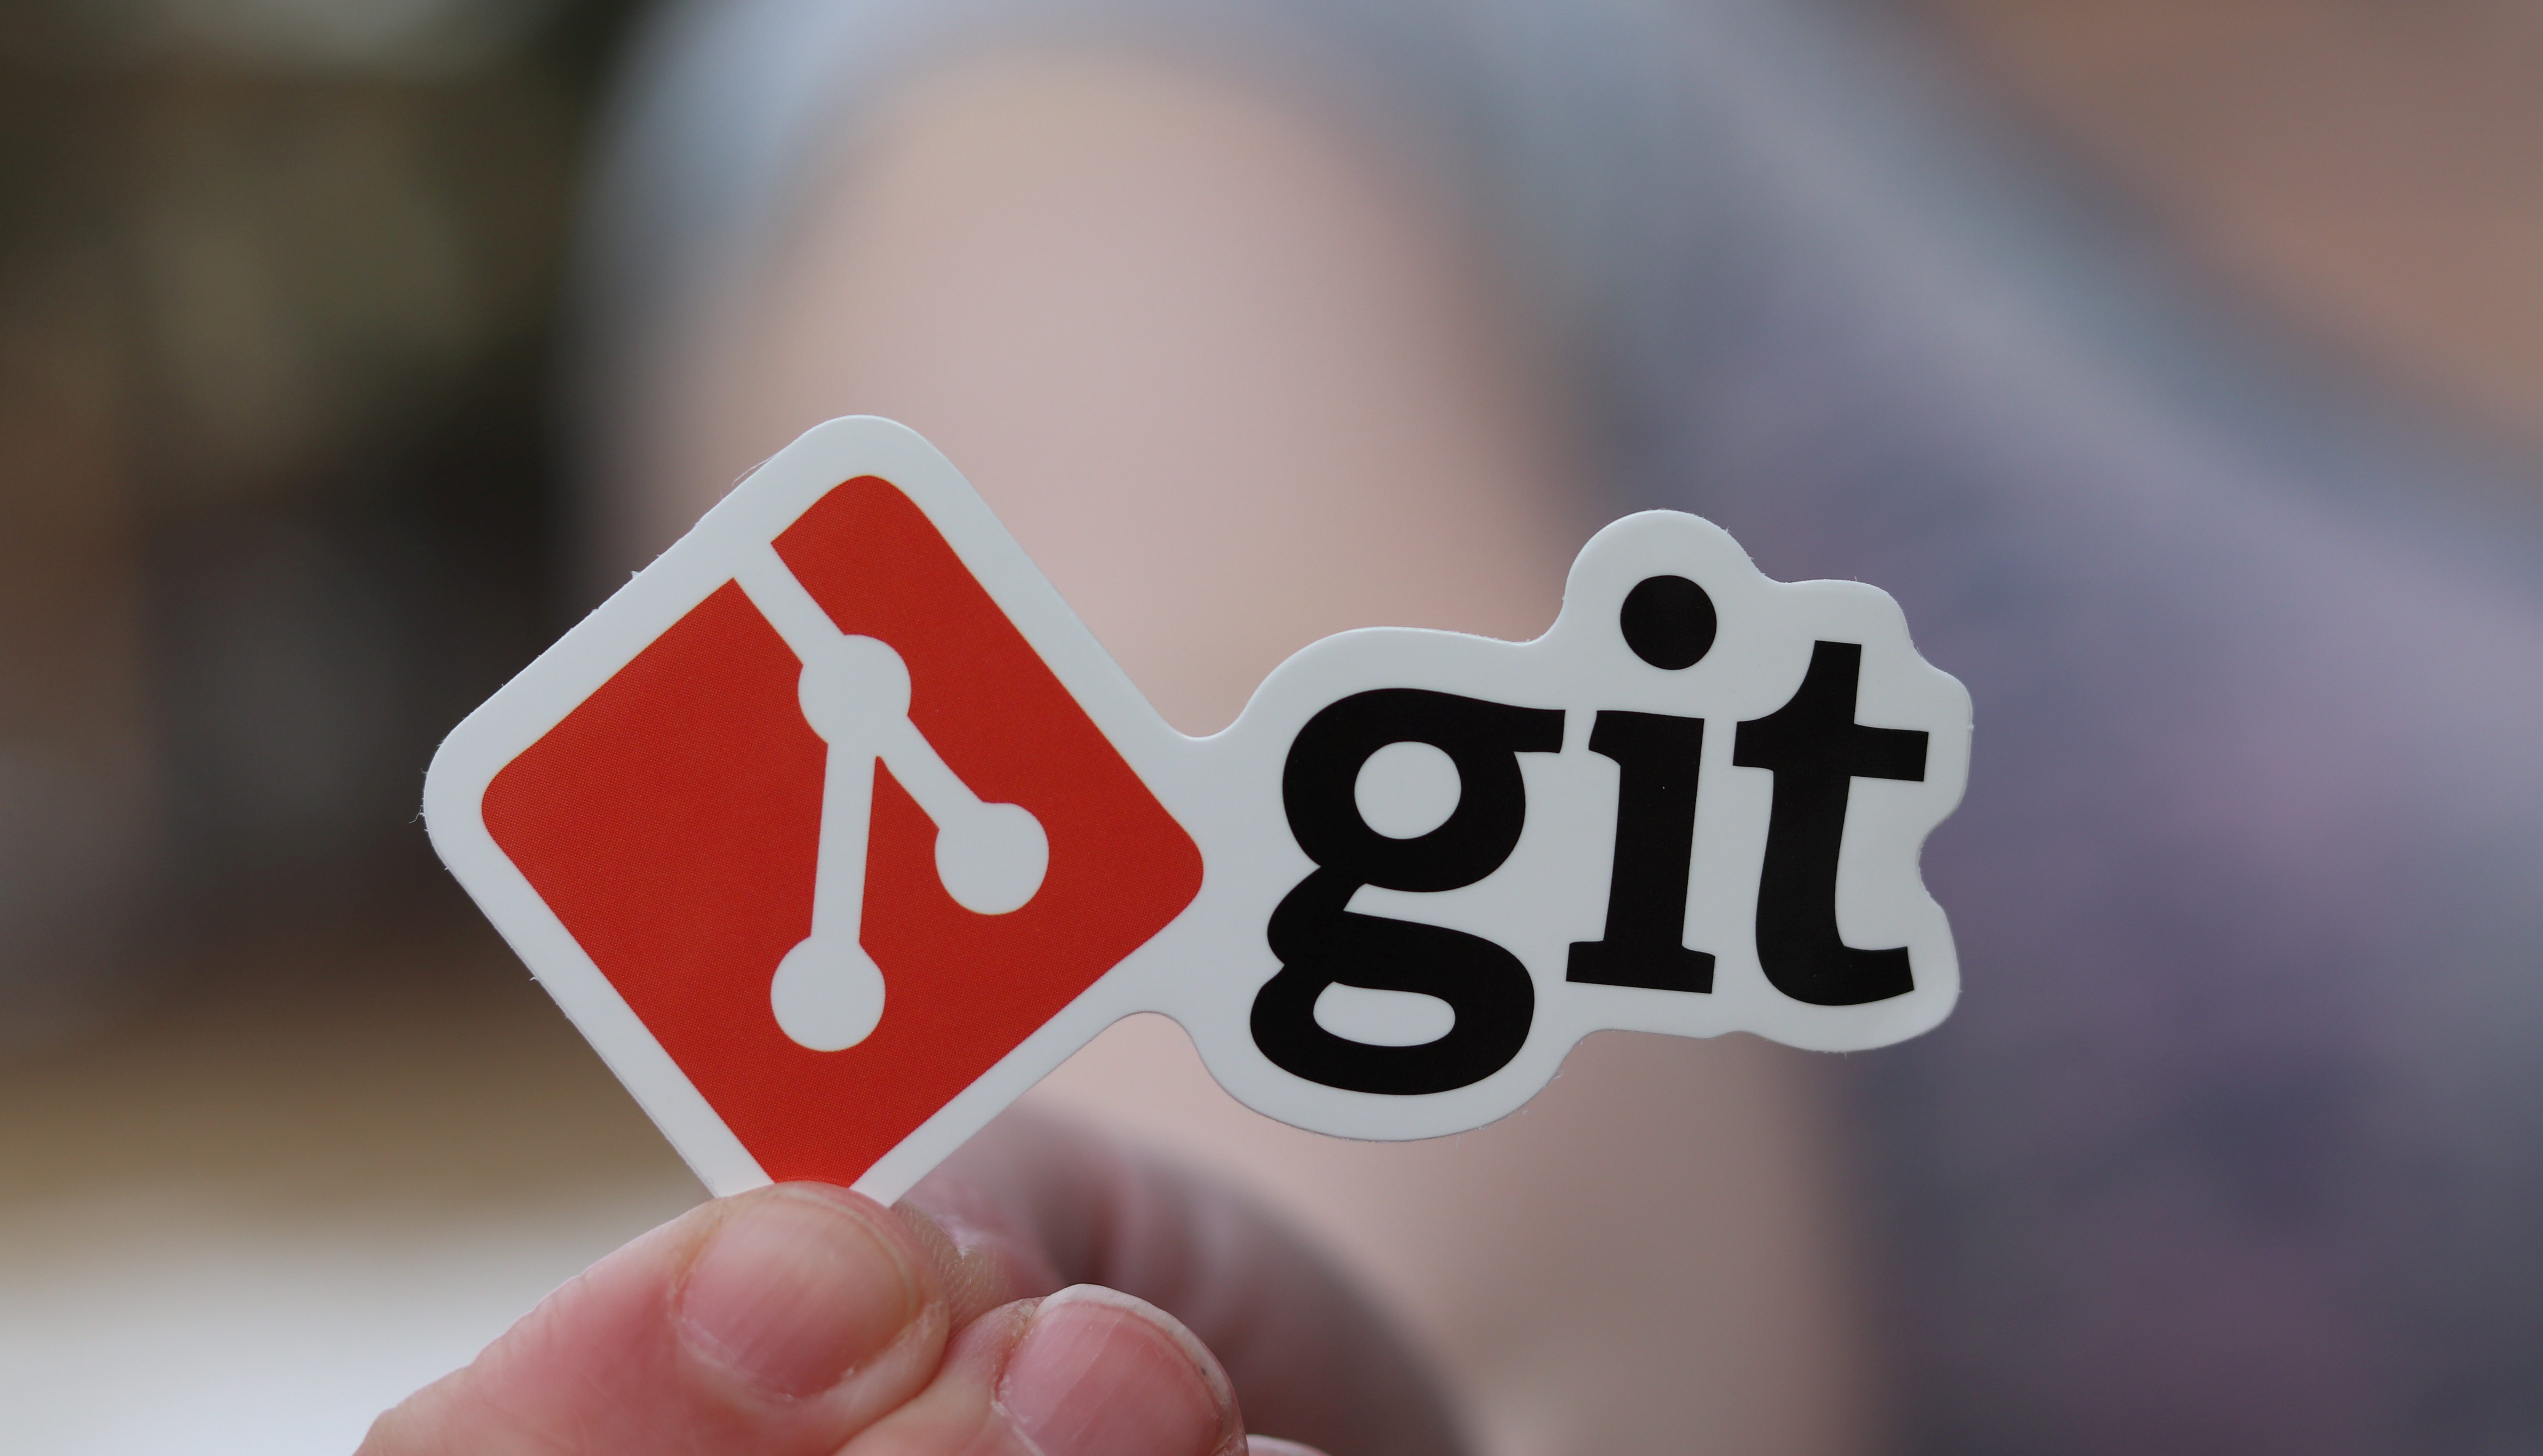 git for mac 10.7.5